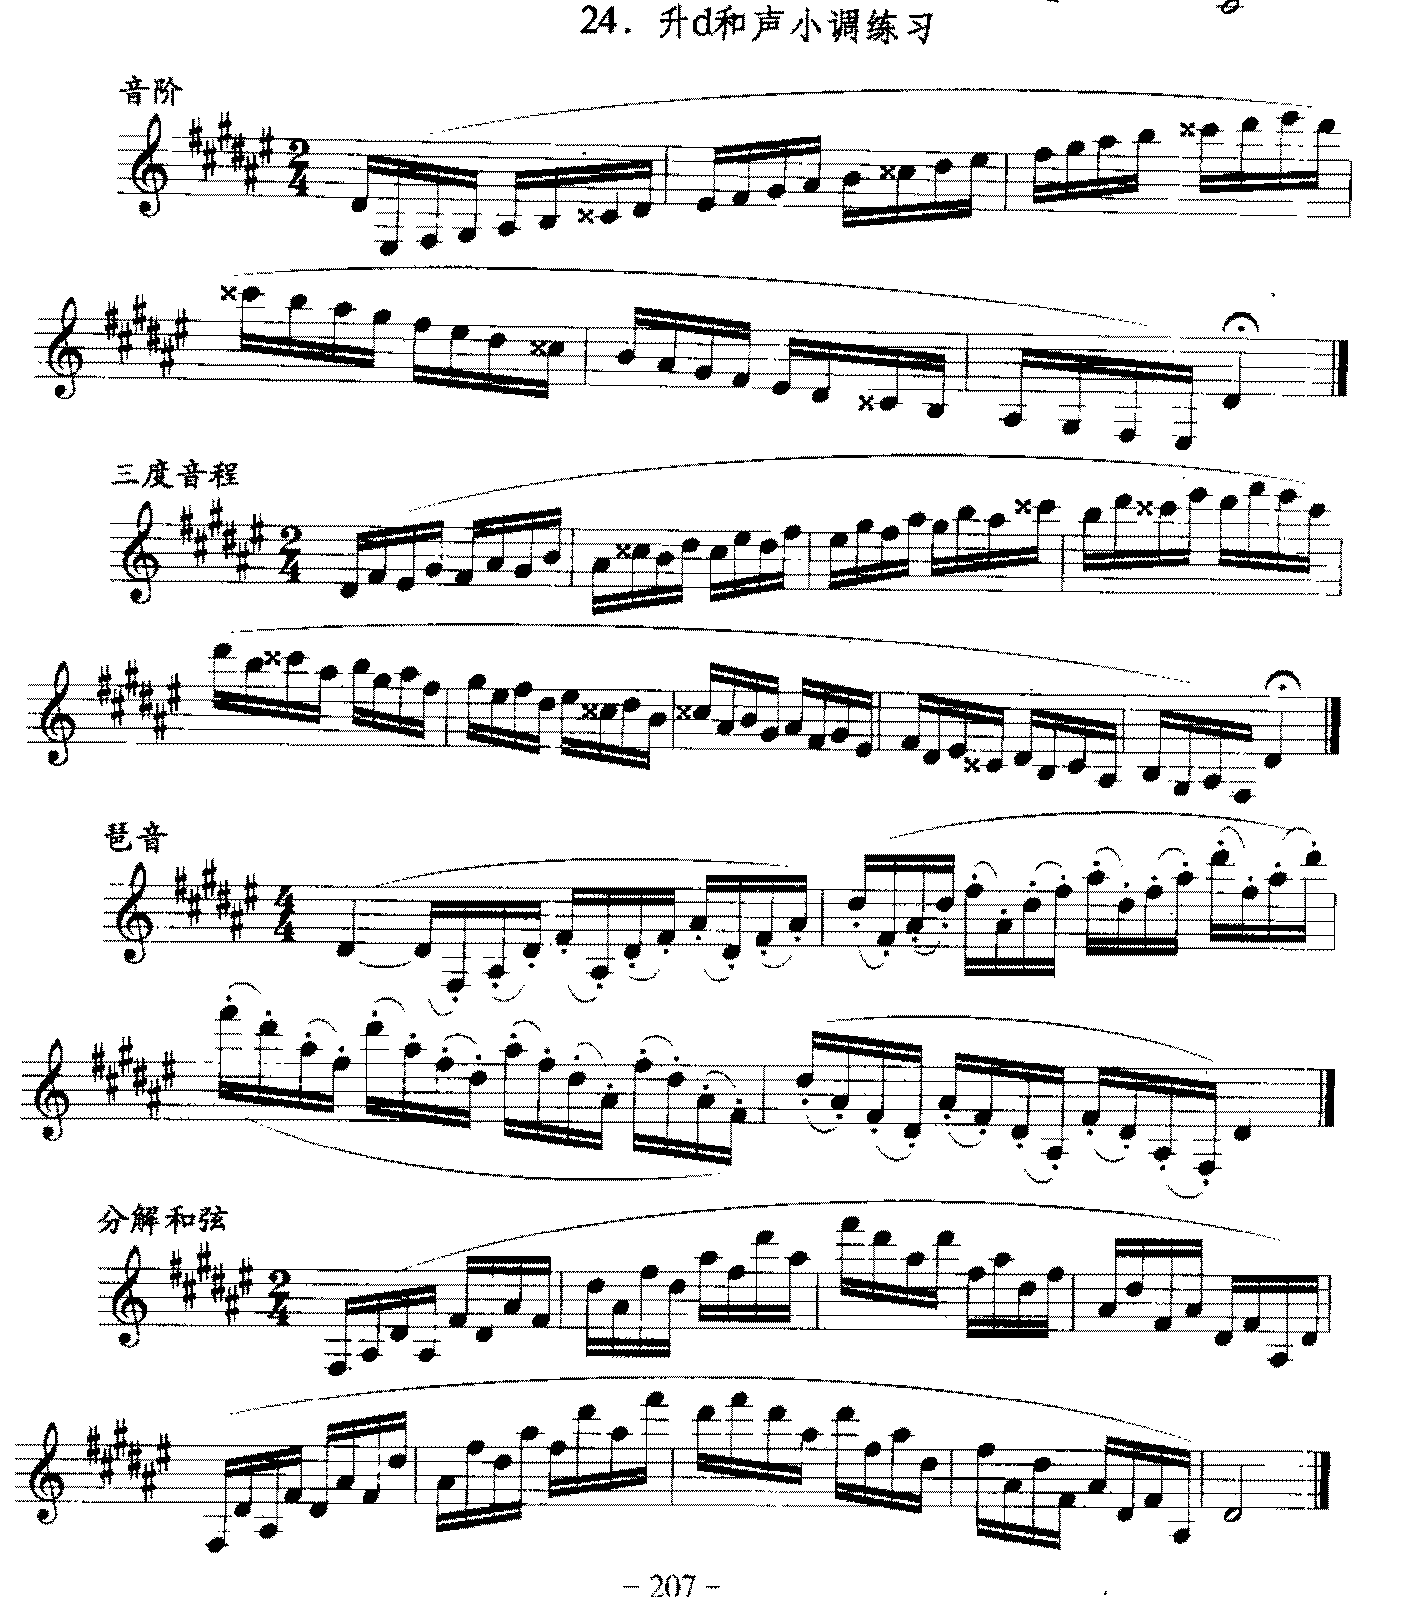 单簧管日常基础技术练习曲《升d和声小调练习》